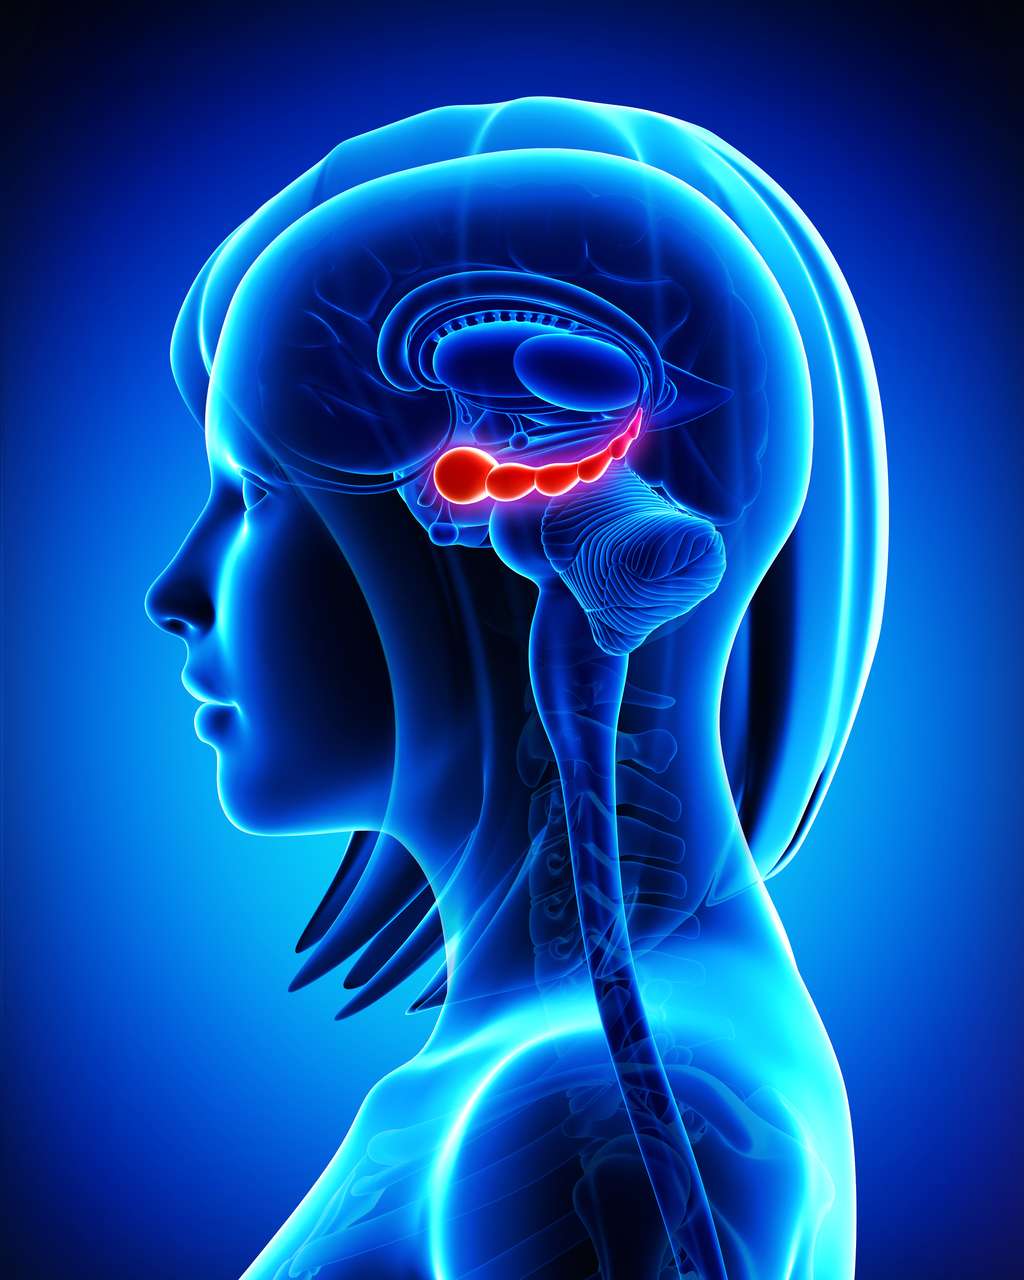 L'hippocampe, une structure du cerveau, joue un rôle majeur dans l'apprentissage et la mémoire. © pankajstock123, Adobe Stock